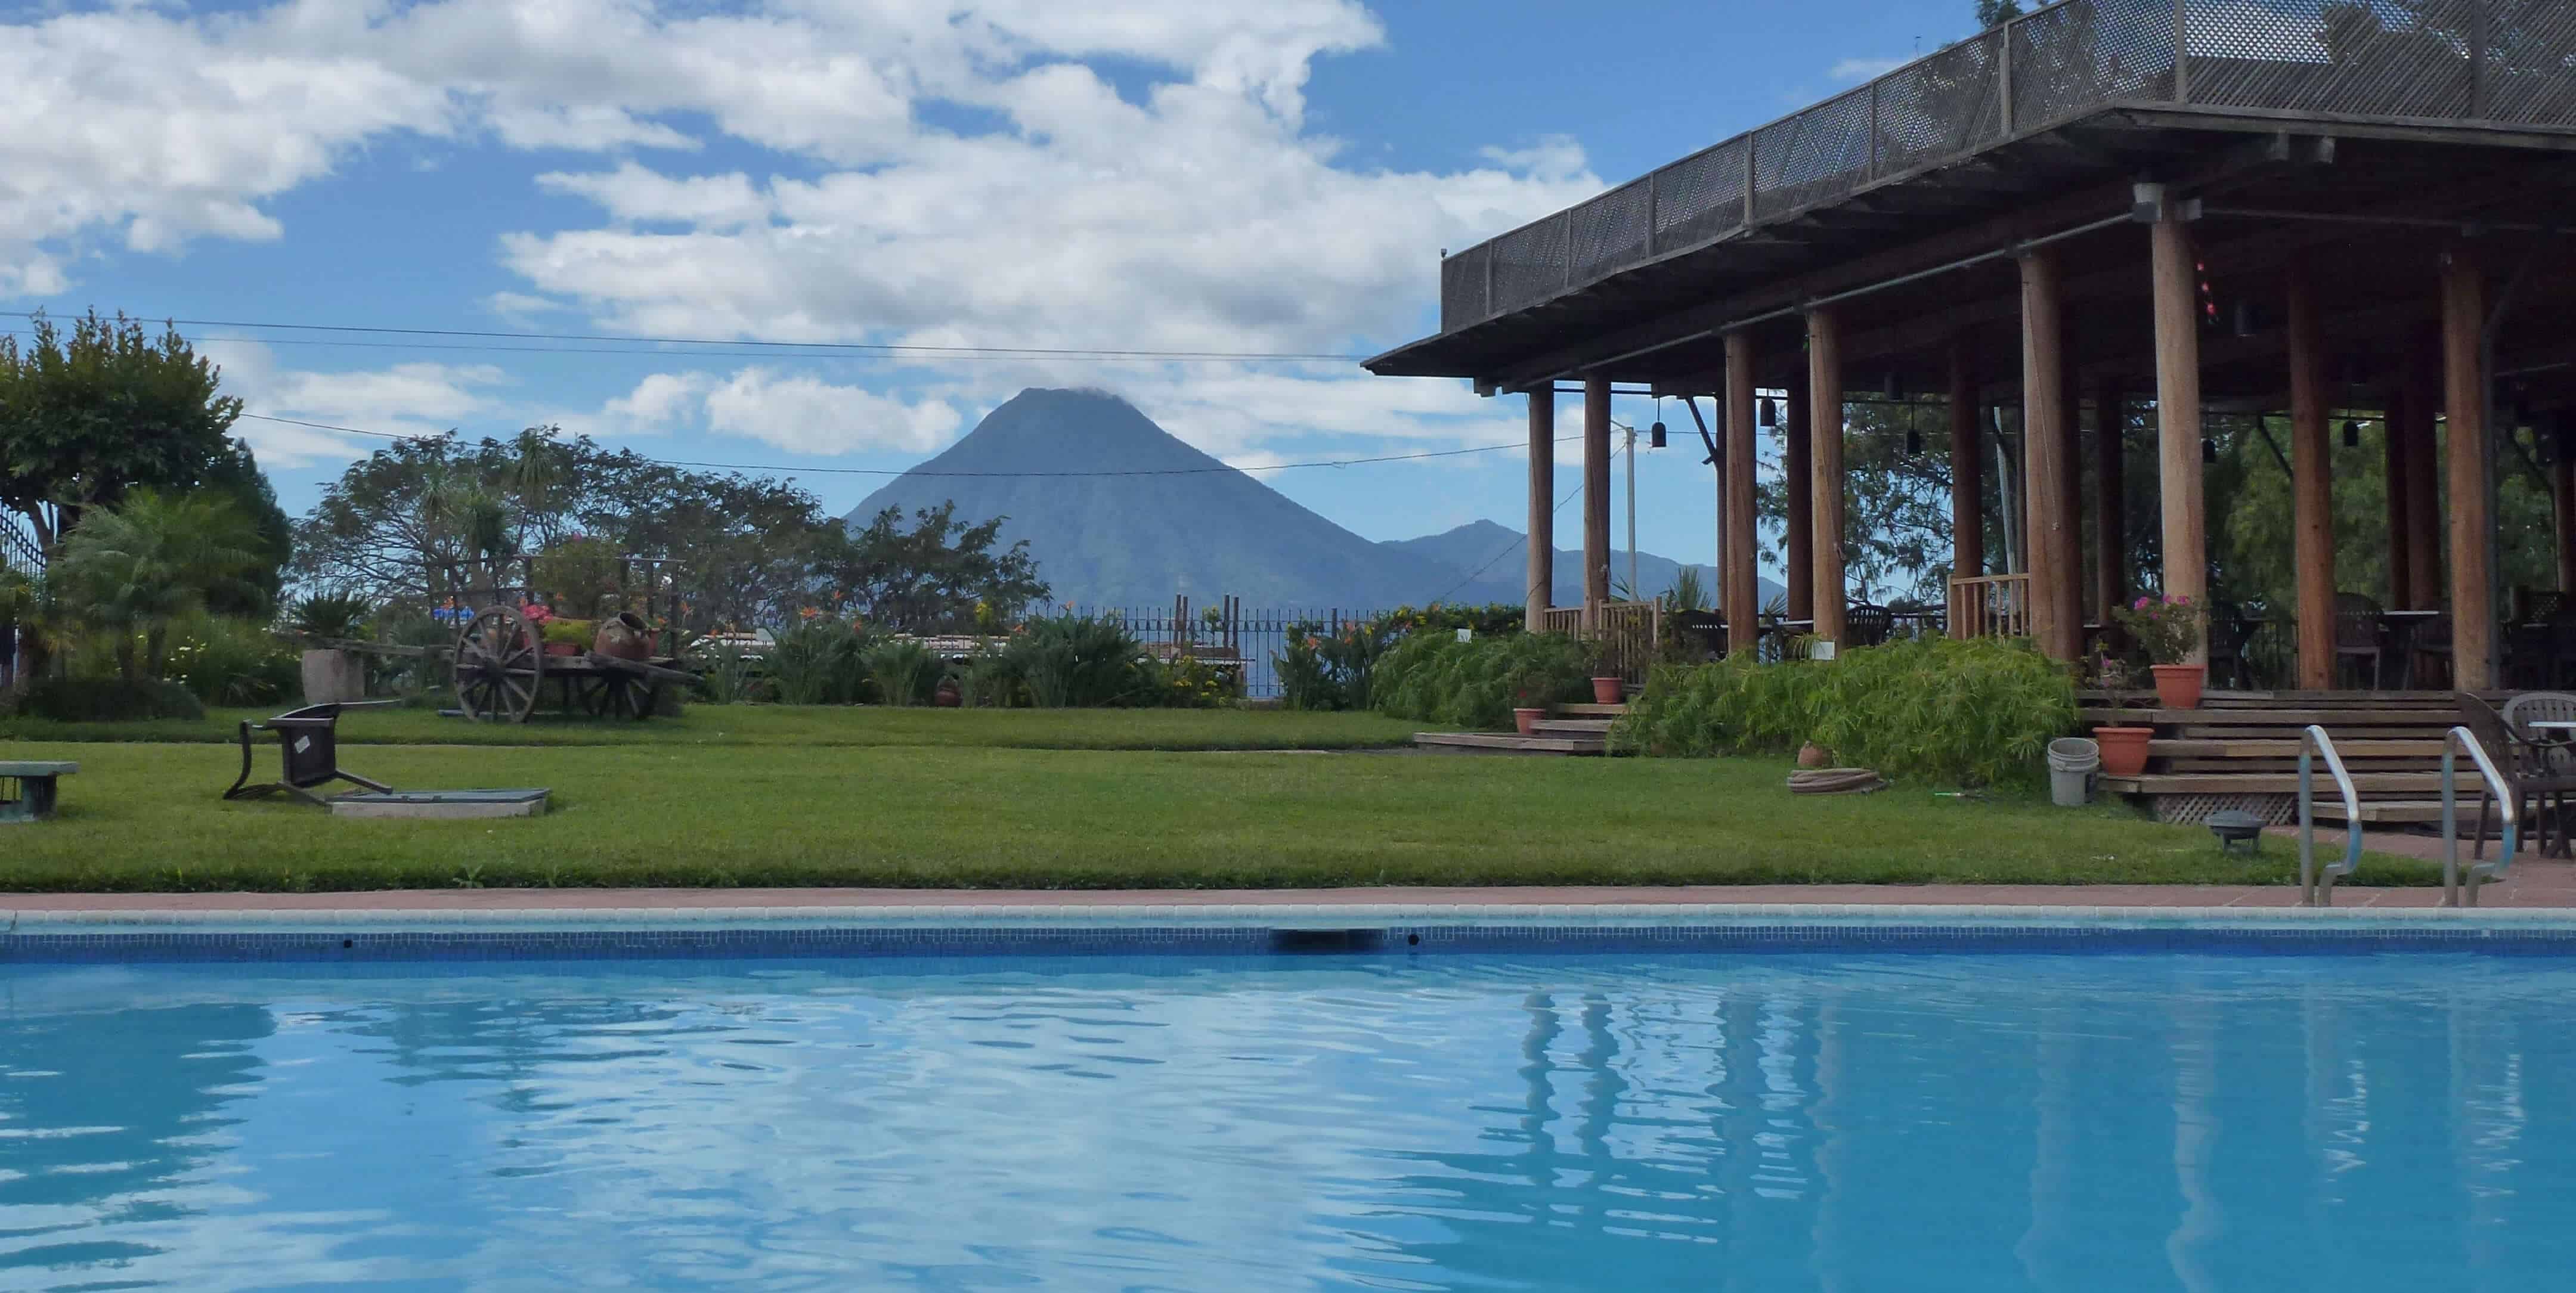 Swimming pool at Hotel Porta del Lago in Panajachel Guatemala